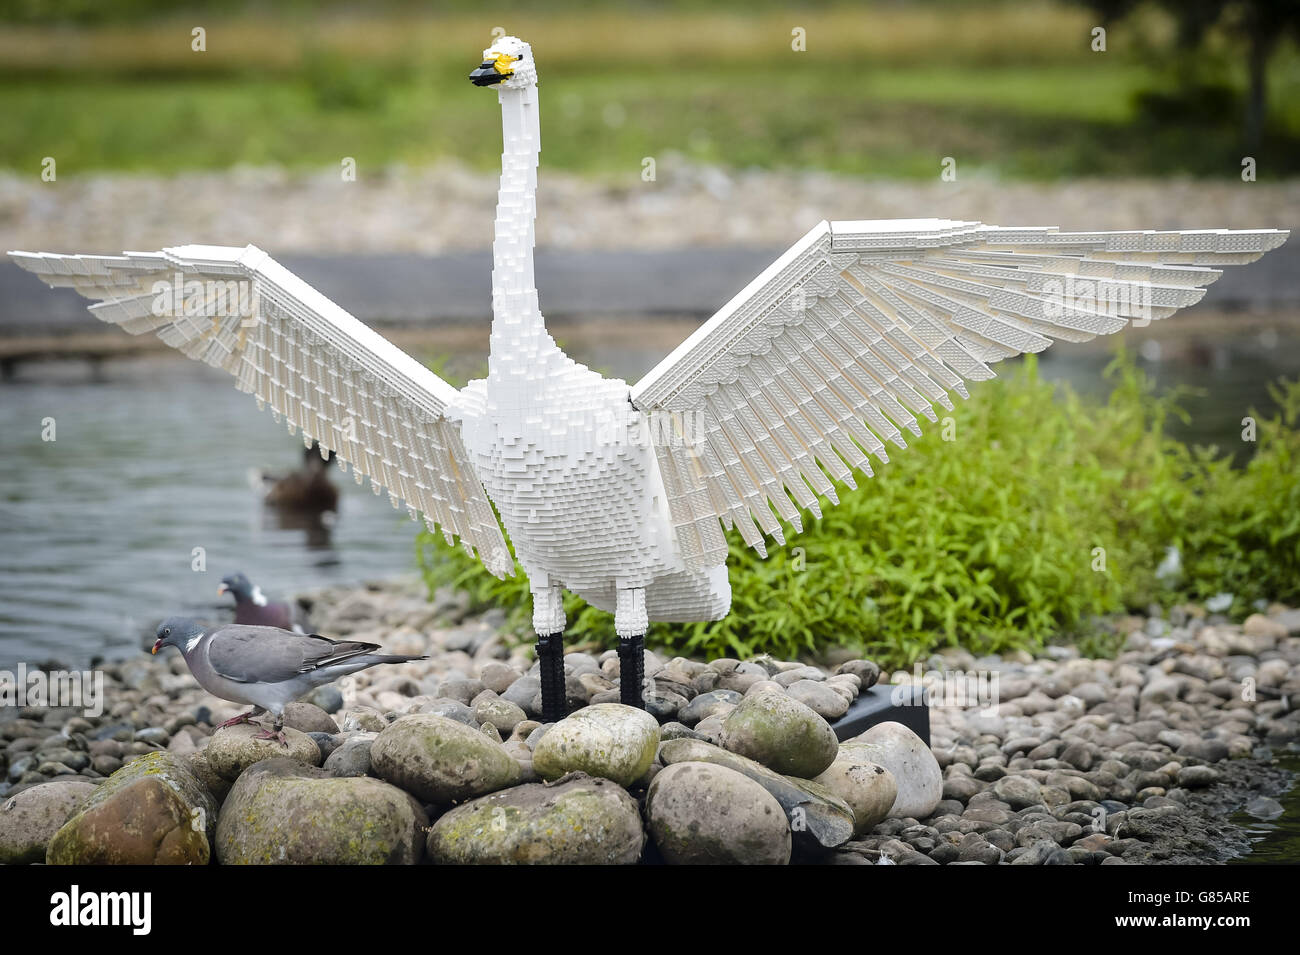 Las palomas se alimentan de una escultura de LEGO para toda la vida de un cisne de Bewick en Wildfowl and Wetlands Trust Slimbridge, Gloucestershire, donde 10 animales de ladrillo de LEGO diseñados individualmente se exhiben durante el verano. Foto de stock